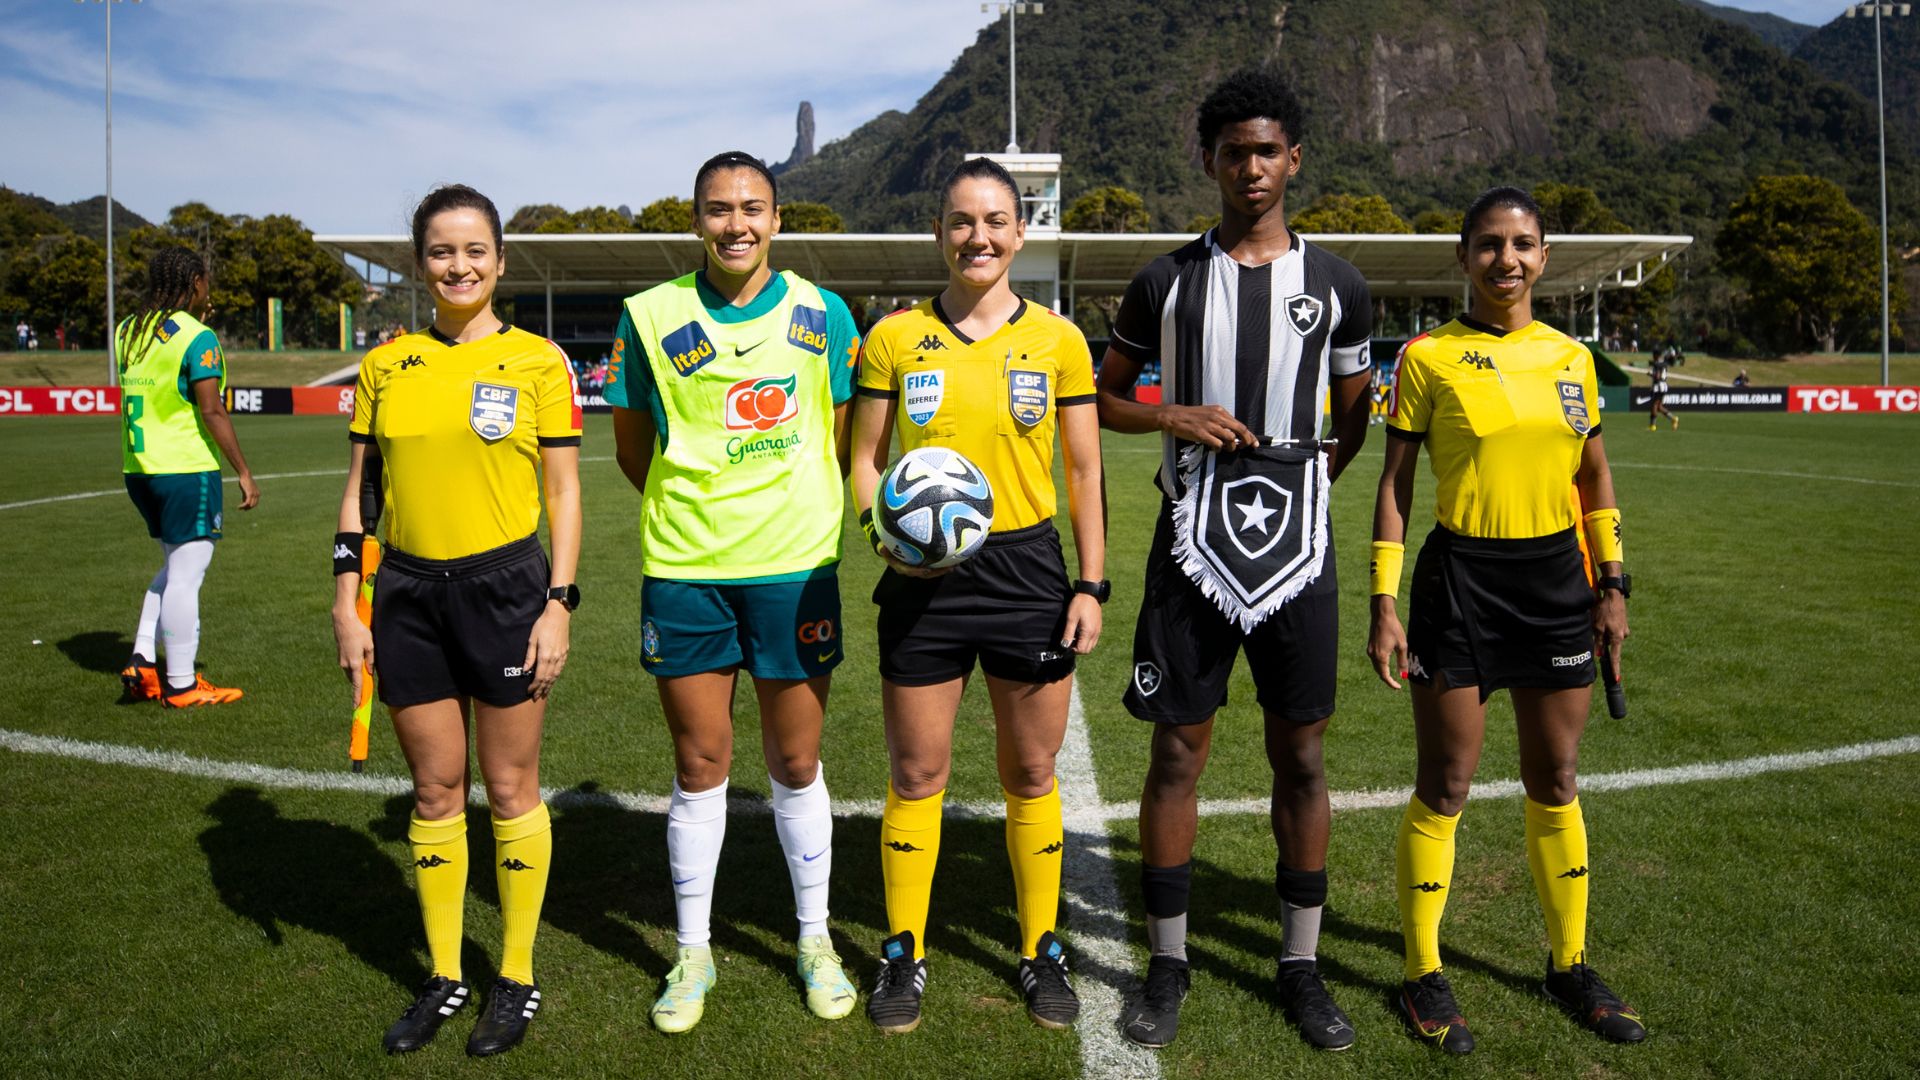 Imagens do jogo-treino entre a Seleção Brasileira e a equipe sub-15 do Botafogo (Crédito: Thais Magalhães / CBF)